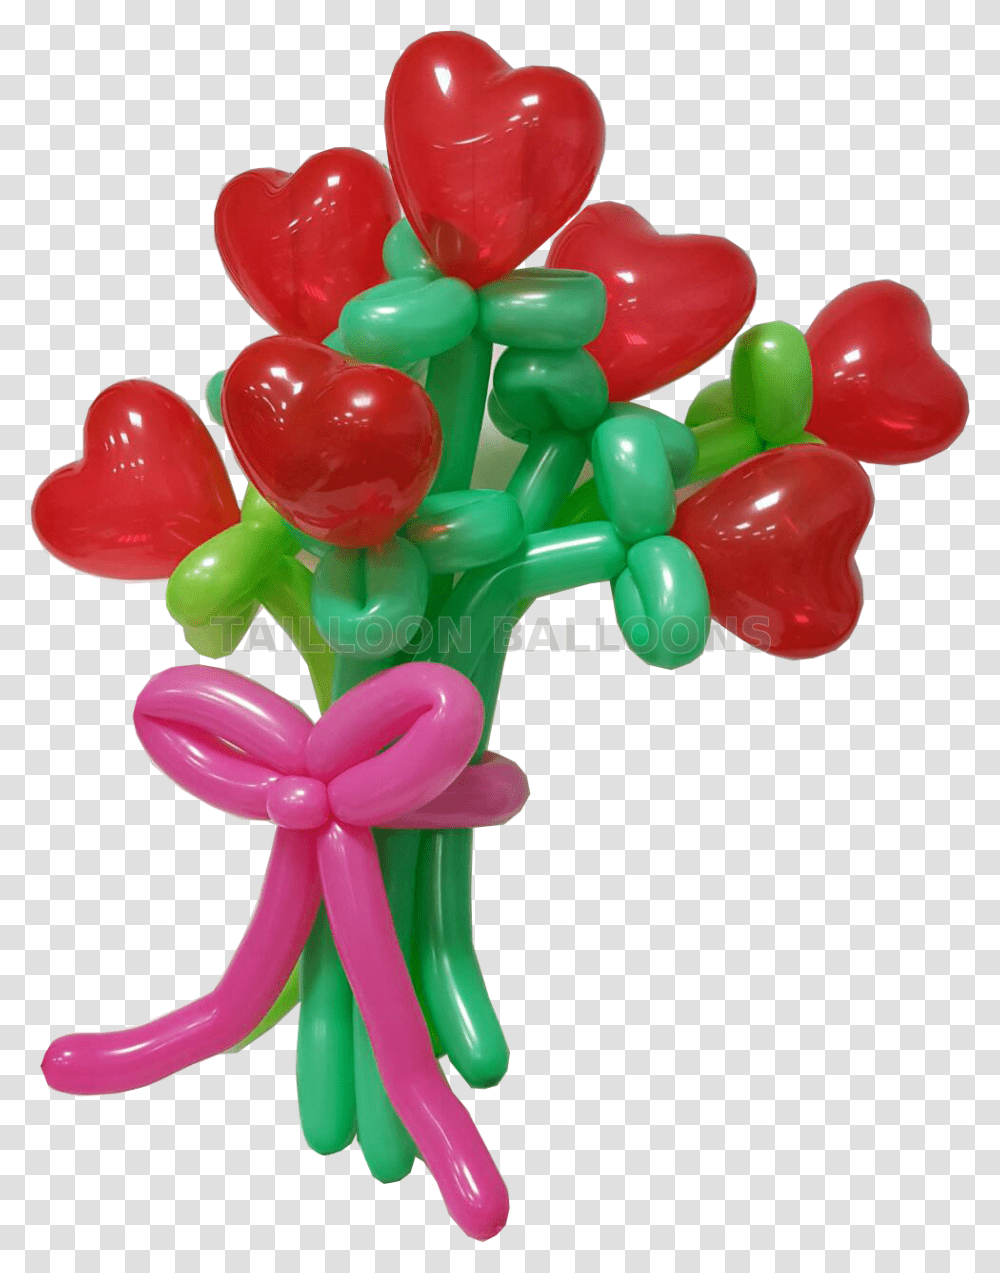 Rubber Balloon Heart Shape Balloon Balloon Transparent Png